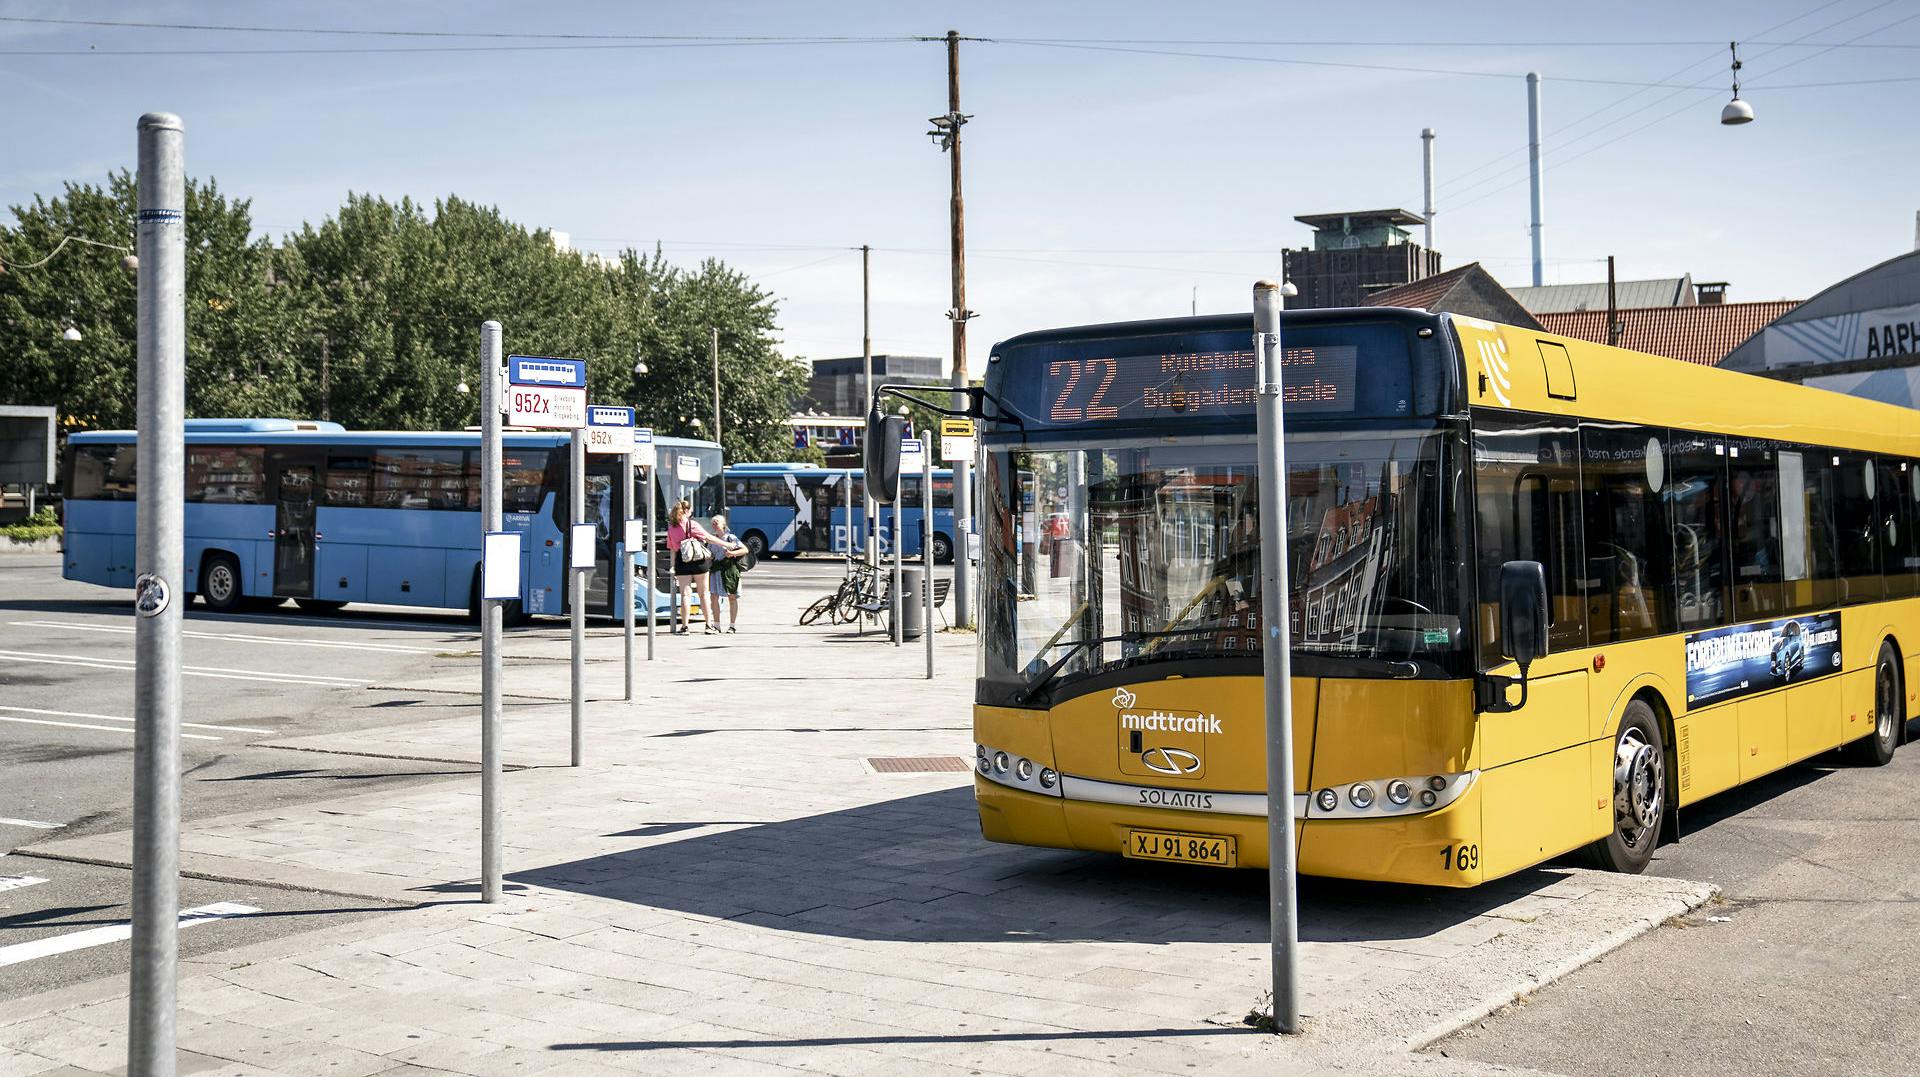 Busser i Aarhus, som her på billedet, skal være gratis. Det mener Lean Milo fra Moderaterne, der foreslår at gøre den offentlige transport i de større danske byer gratis. nbsp;